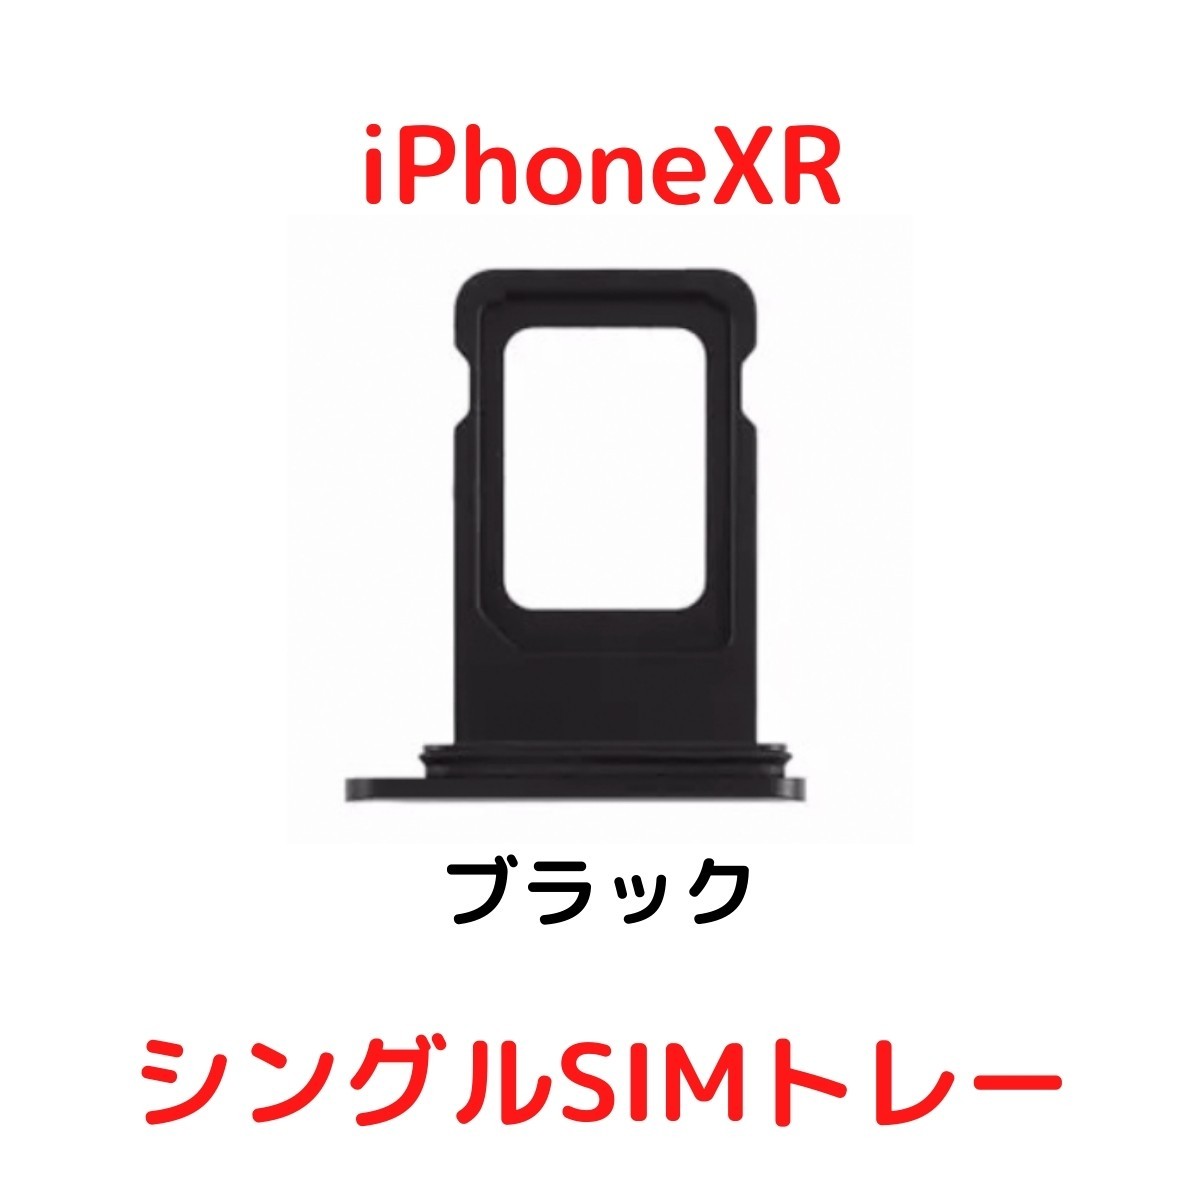 【選べる6色】 iPhoneXR レッド ブルー イエロー ブラック ホワイト コーラル シングルSIM 防水リング付き SIMトレー SIMスロット_画像6